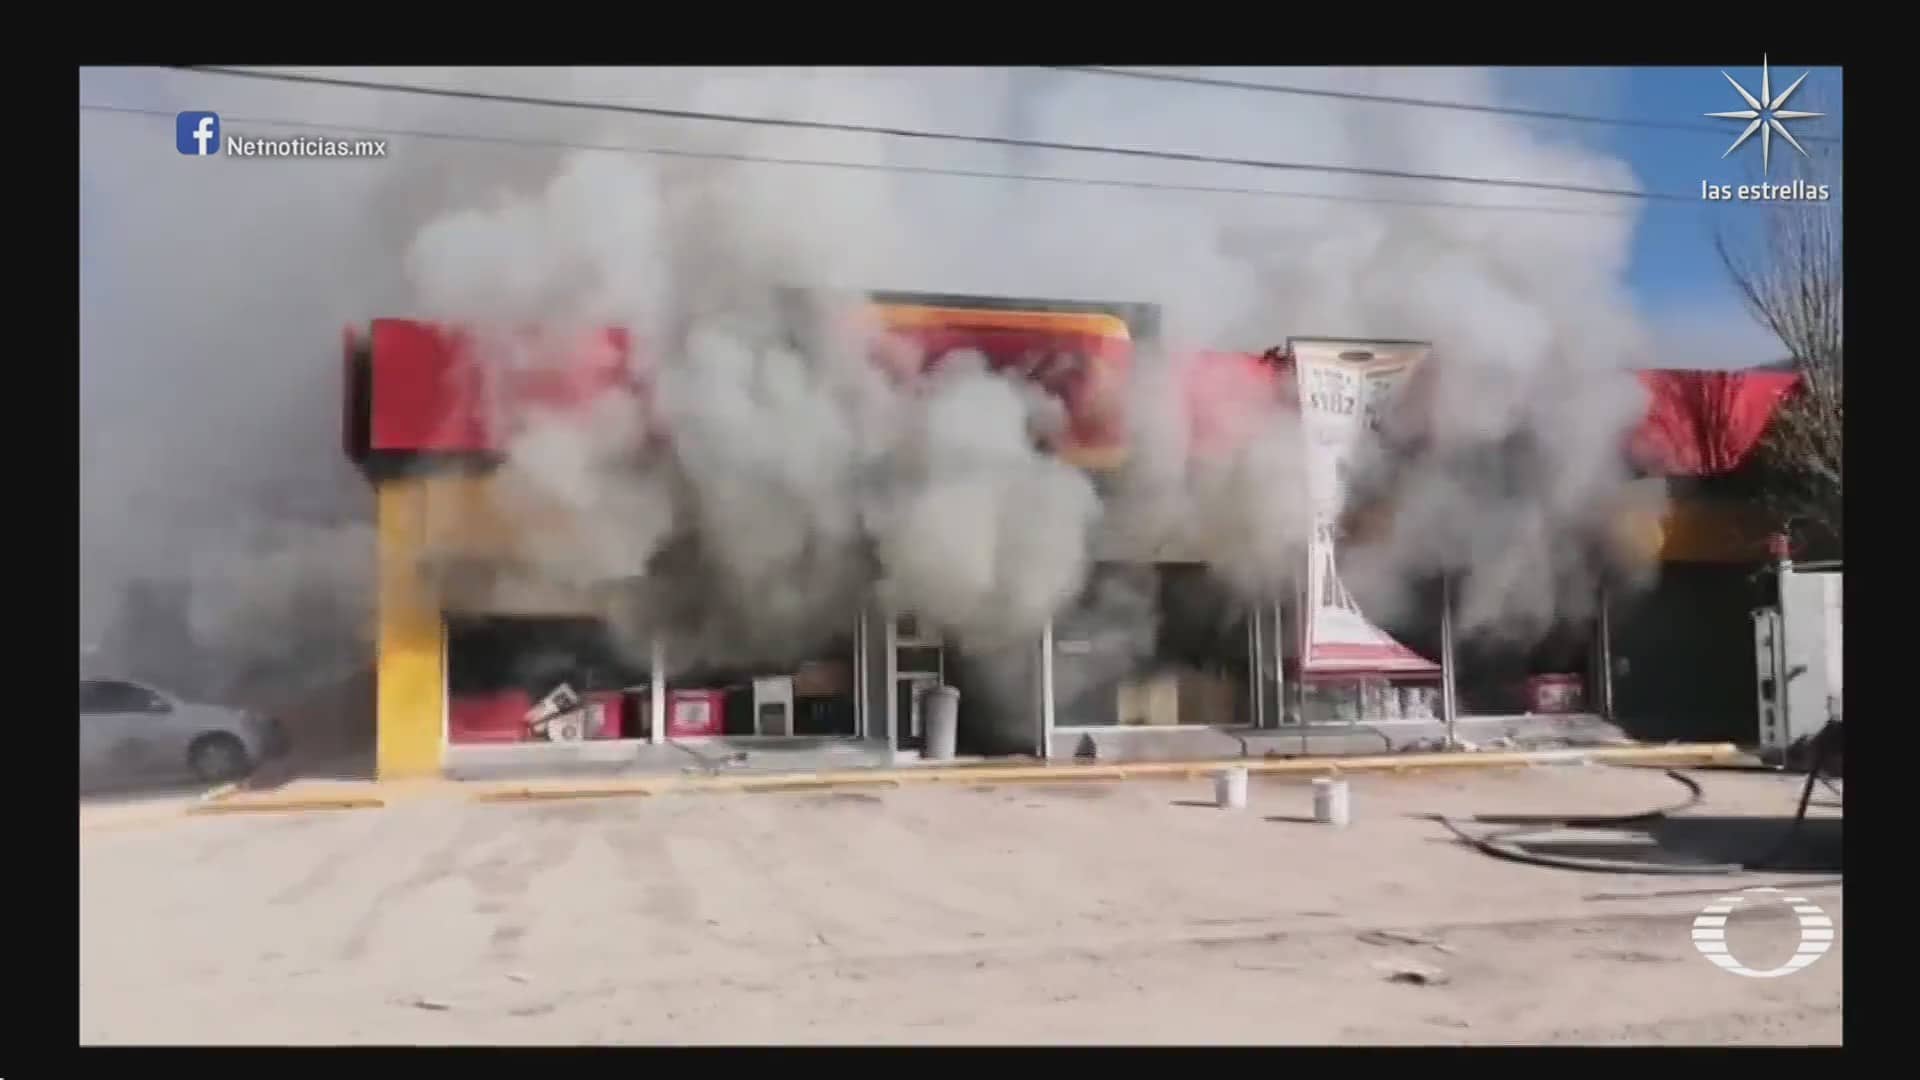 delincuencia organizada provoca varios incendios en ciudad juarez chihuahua